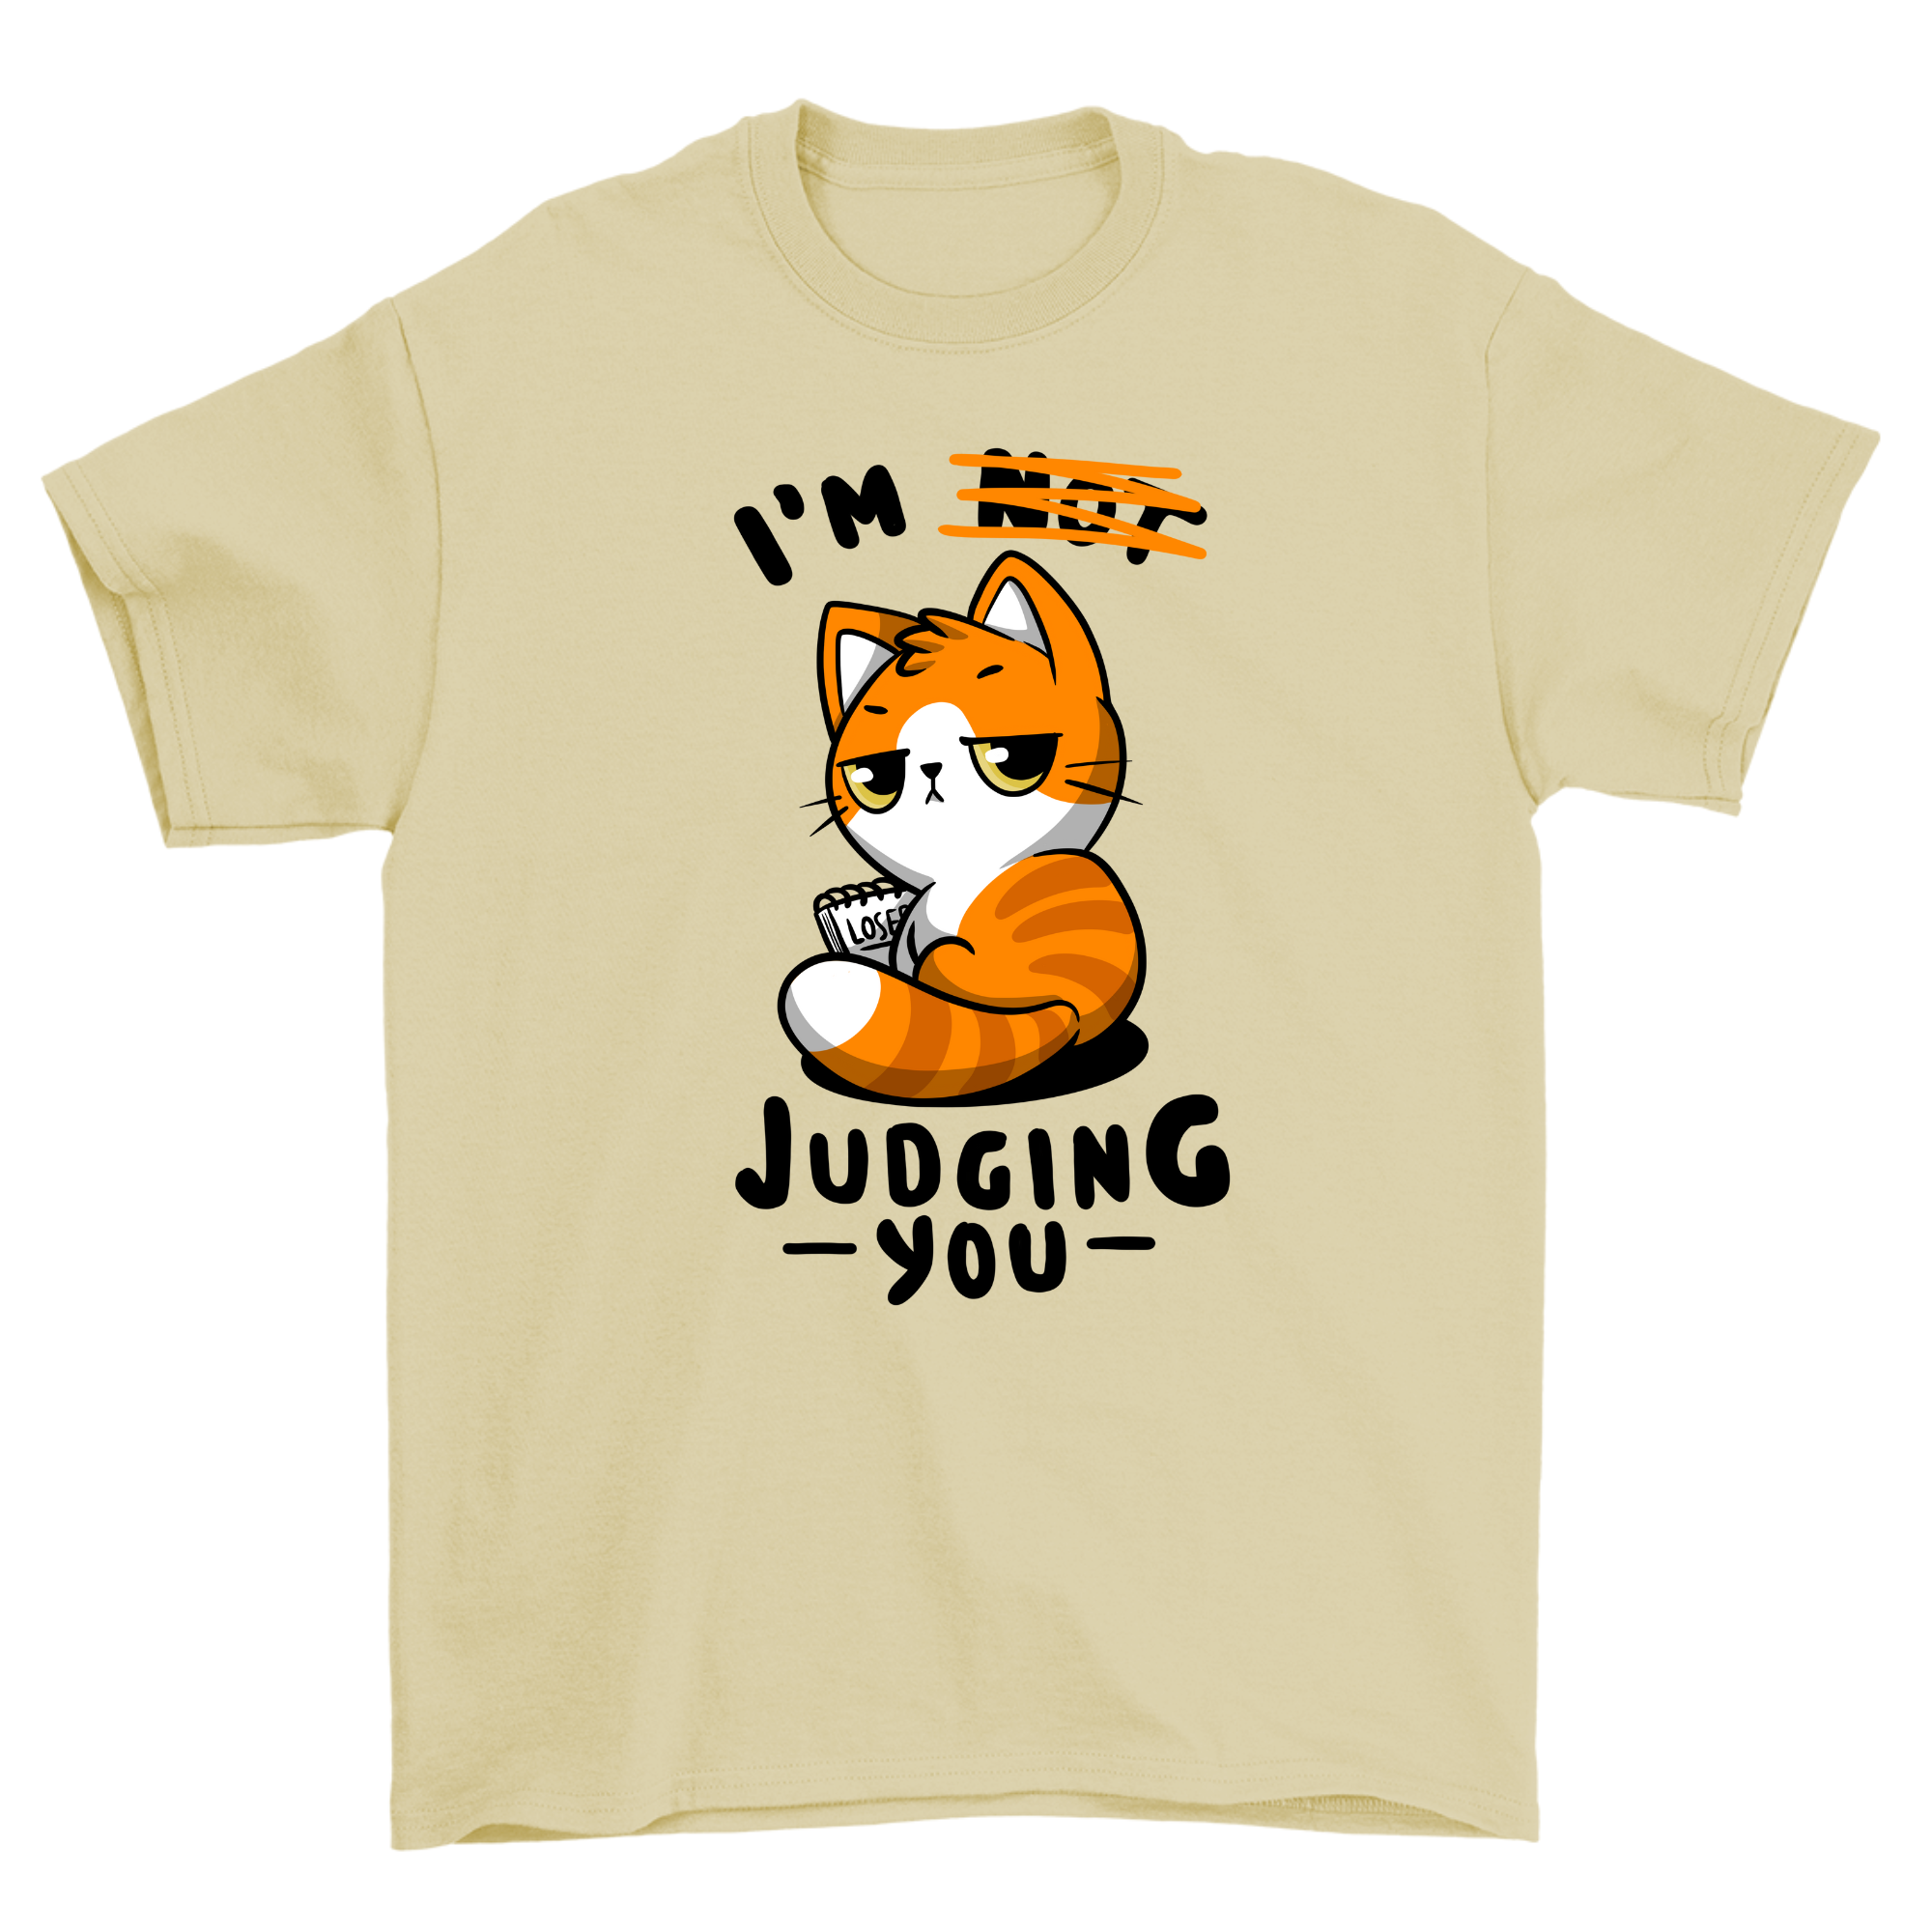 judging you - Shirt Unisex